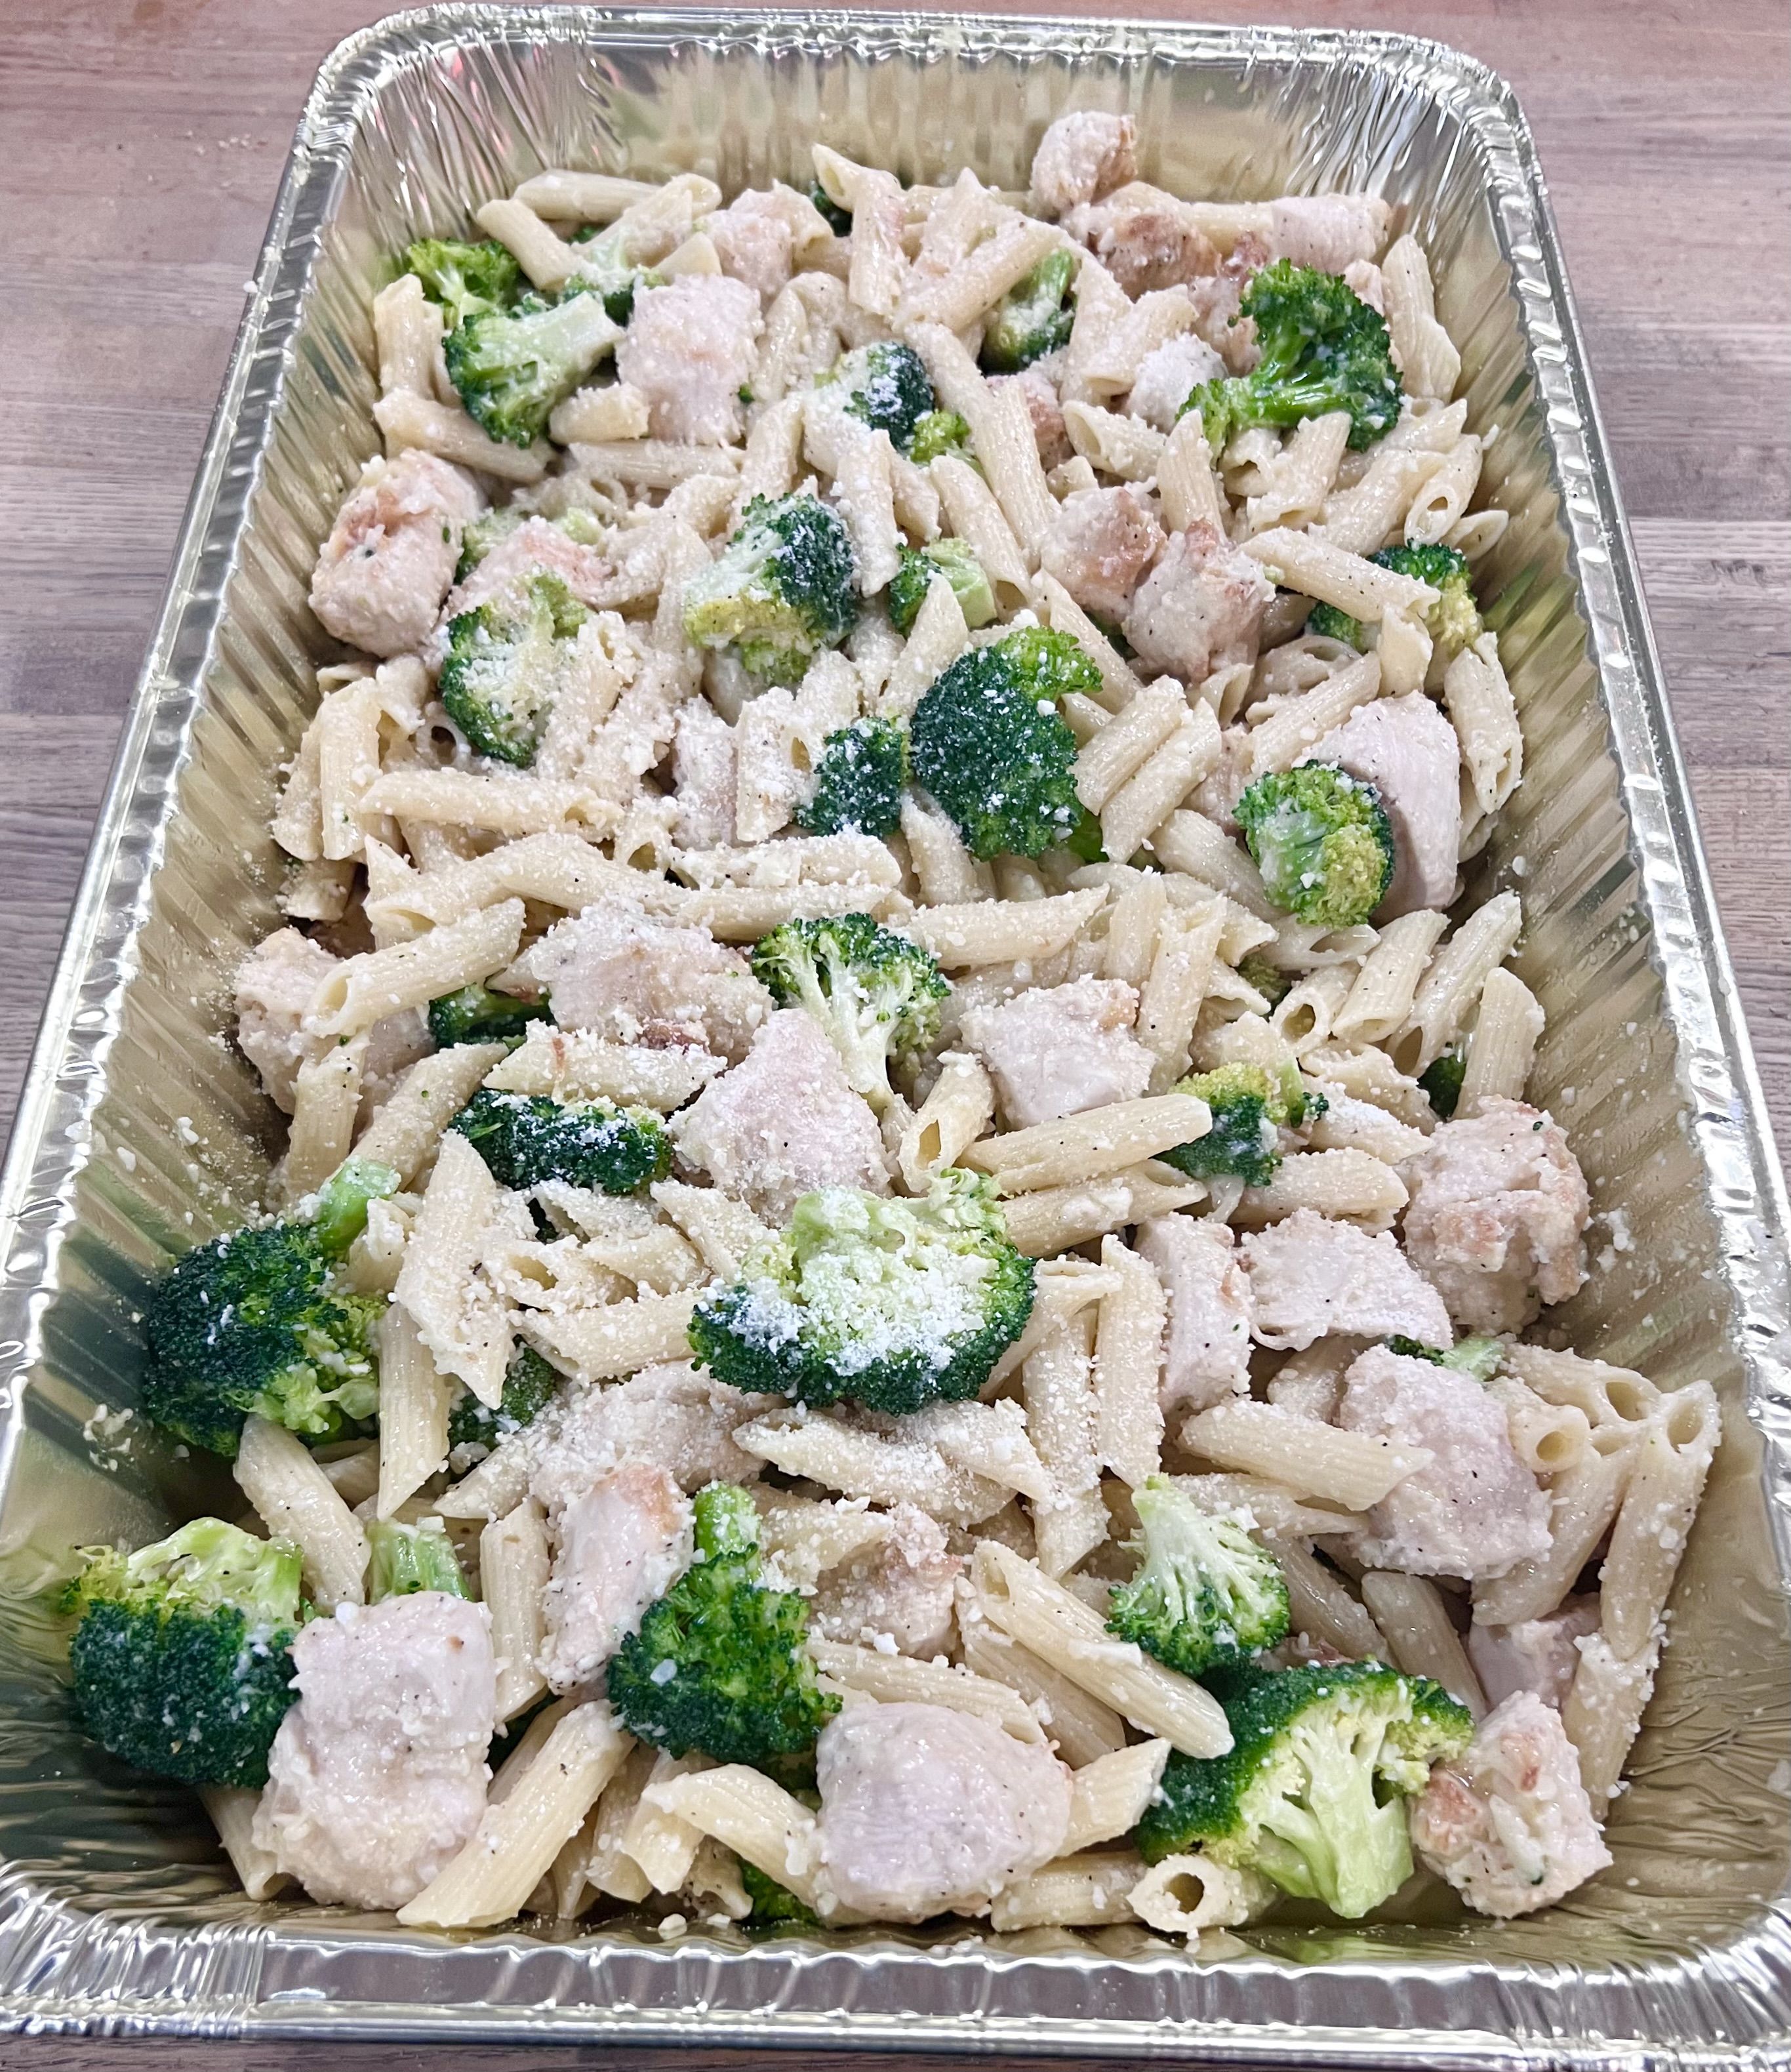 Pasta con Broccoli & Chicken - Small